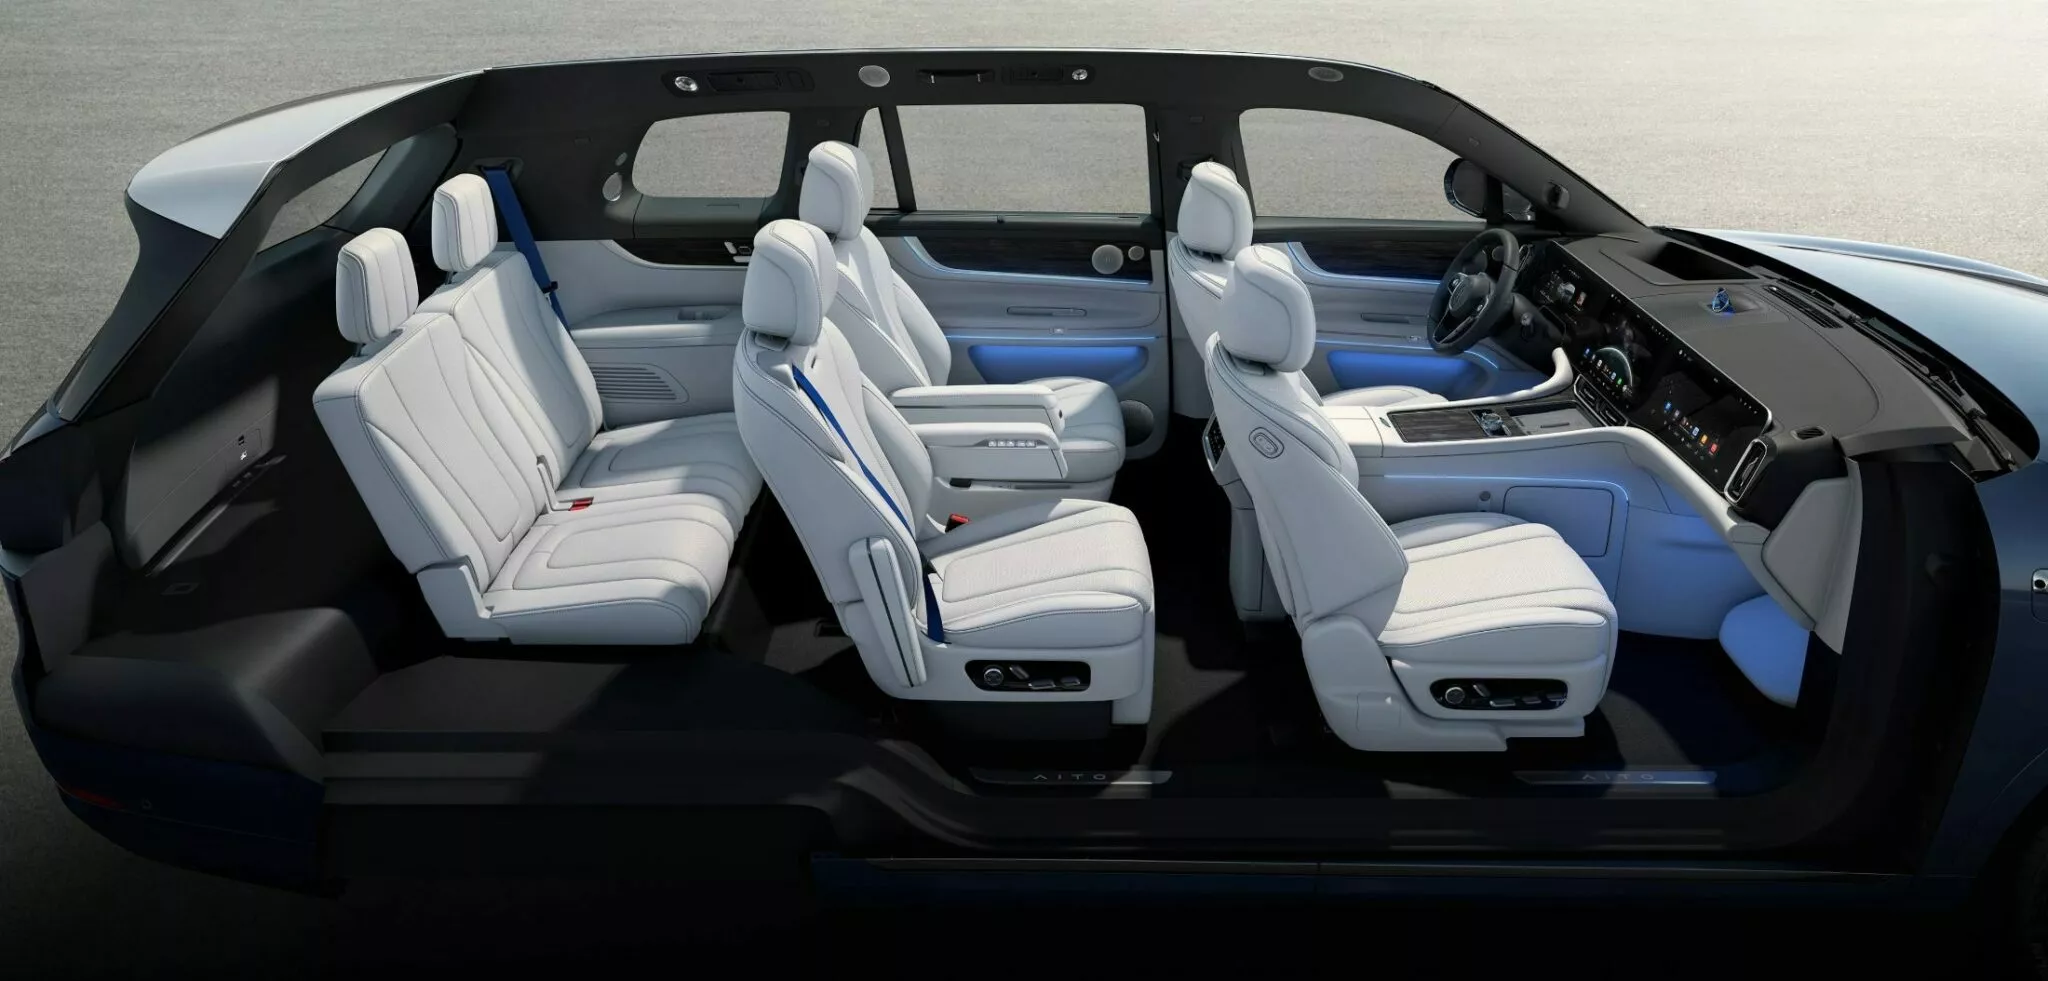 شركة هواوي تكشف عن سيارة SUV كهربائية فاخرة بشاشة سينمائية وقوة 530 حصان 15